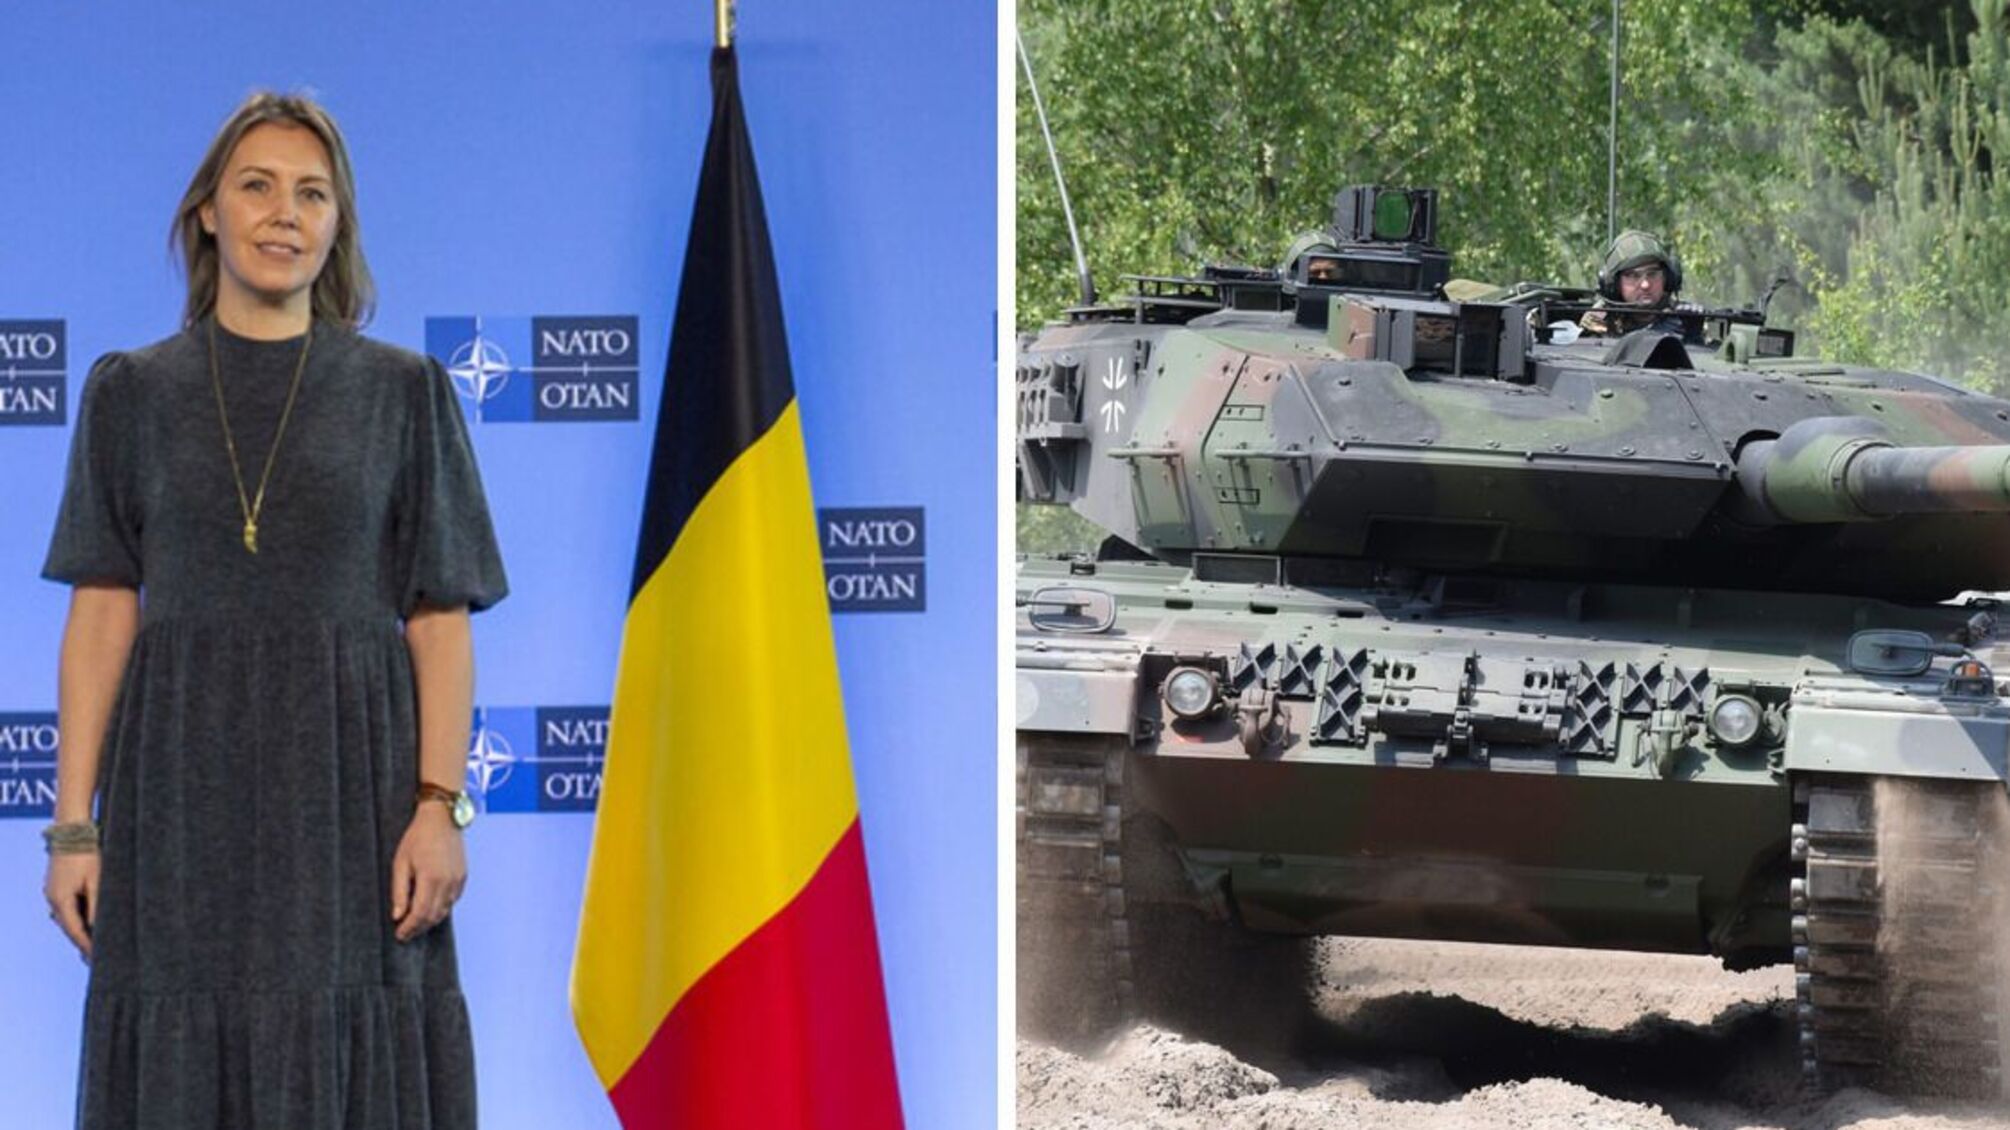 Бельгия сообщила о вооруженной поддержке Украины